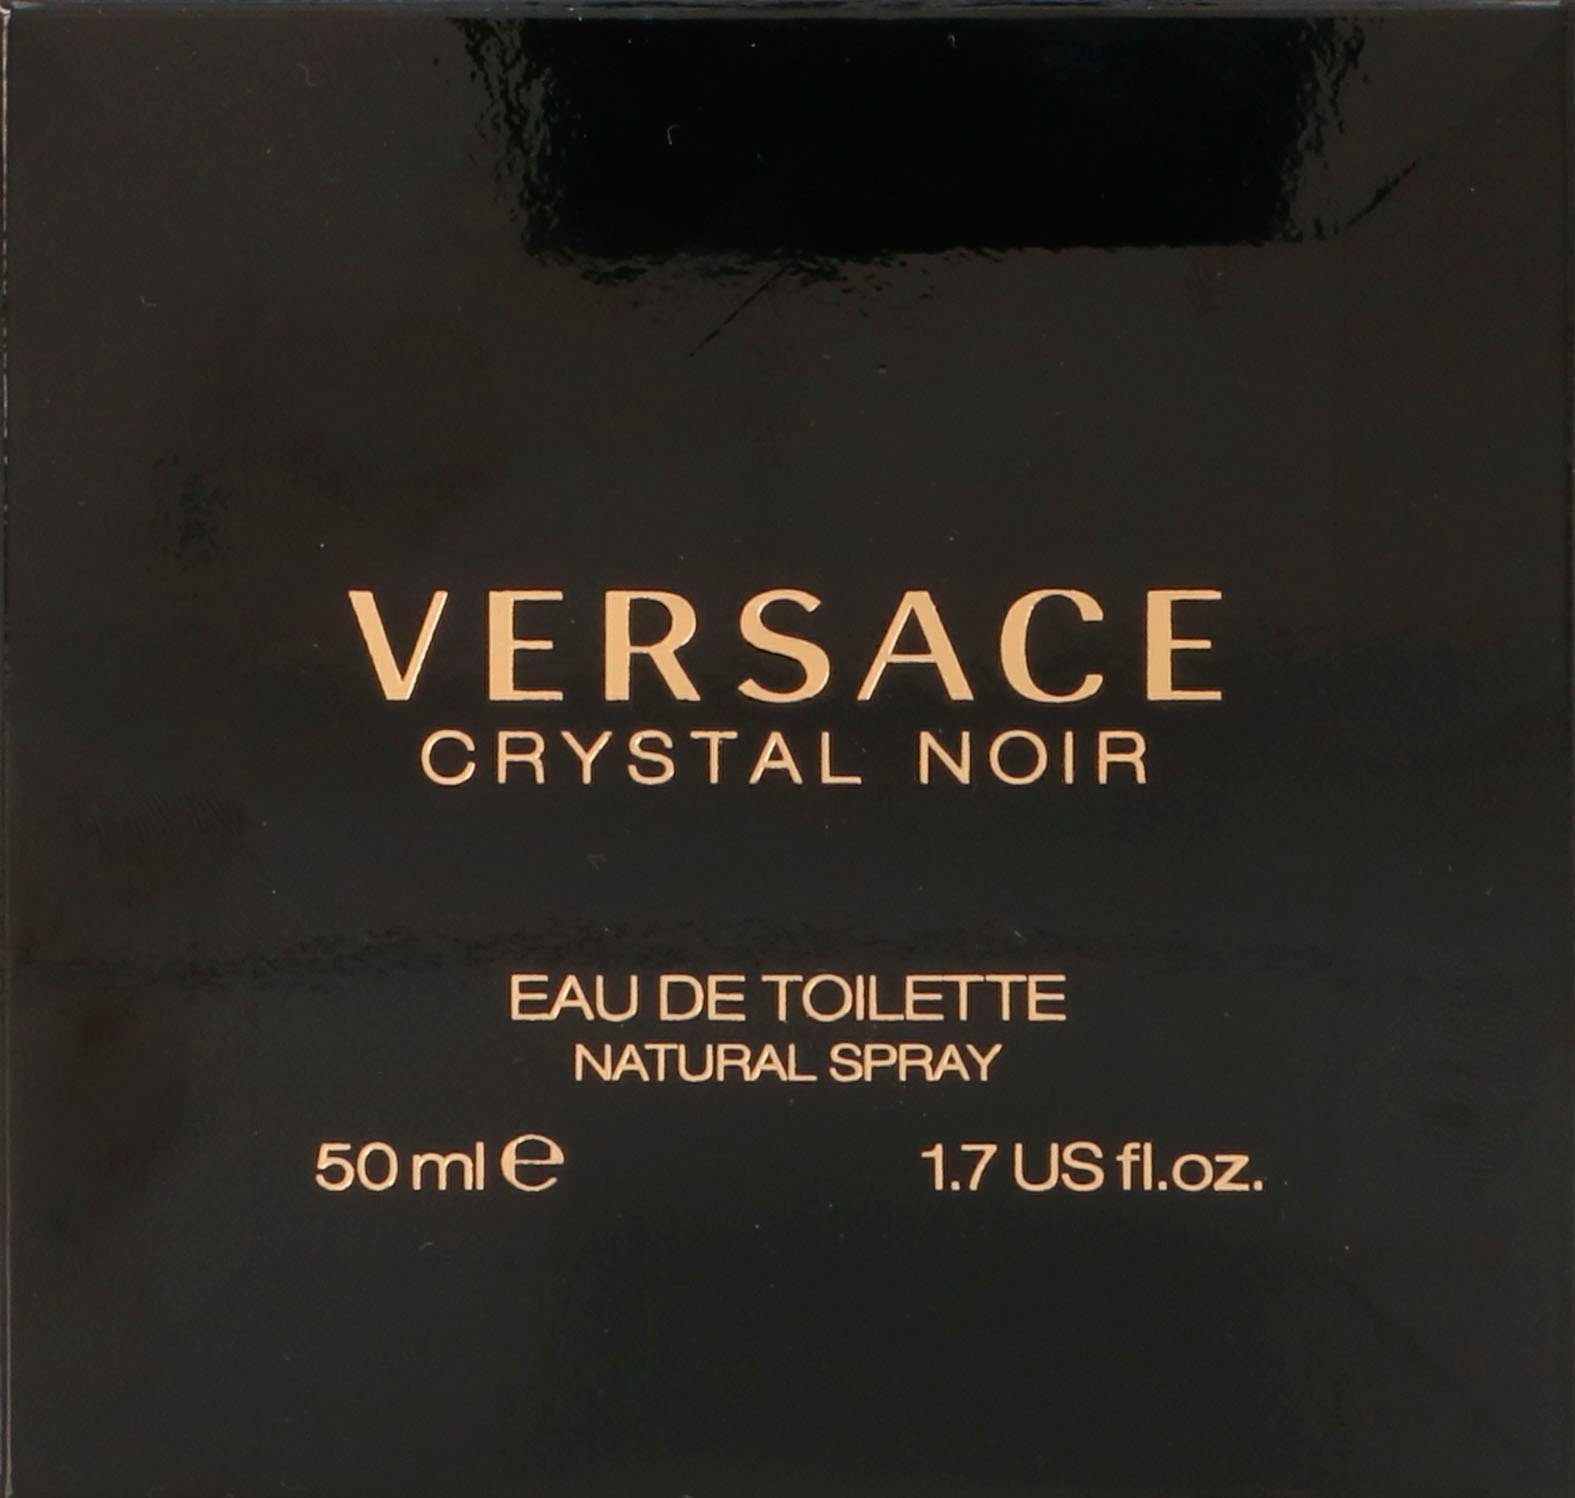 Versace Eau de Toilette Bright Noir Crystal